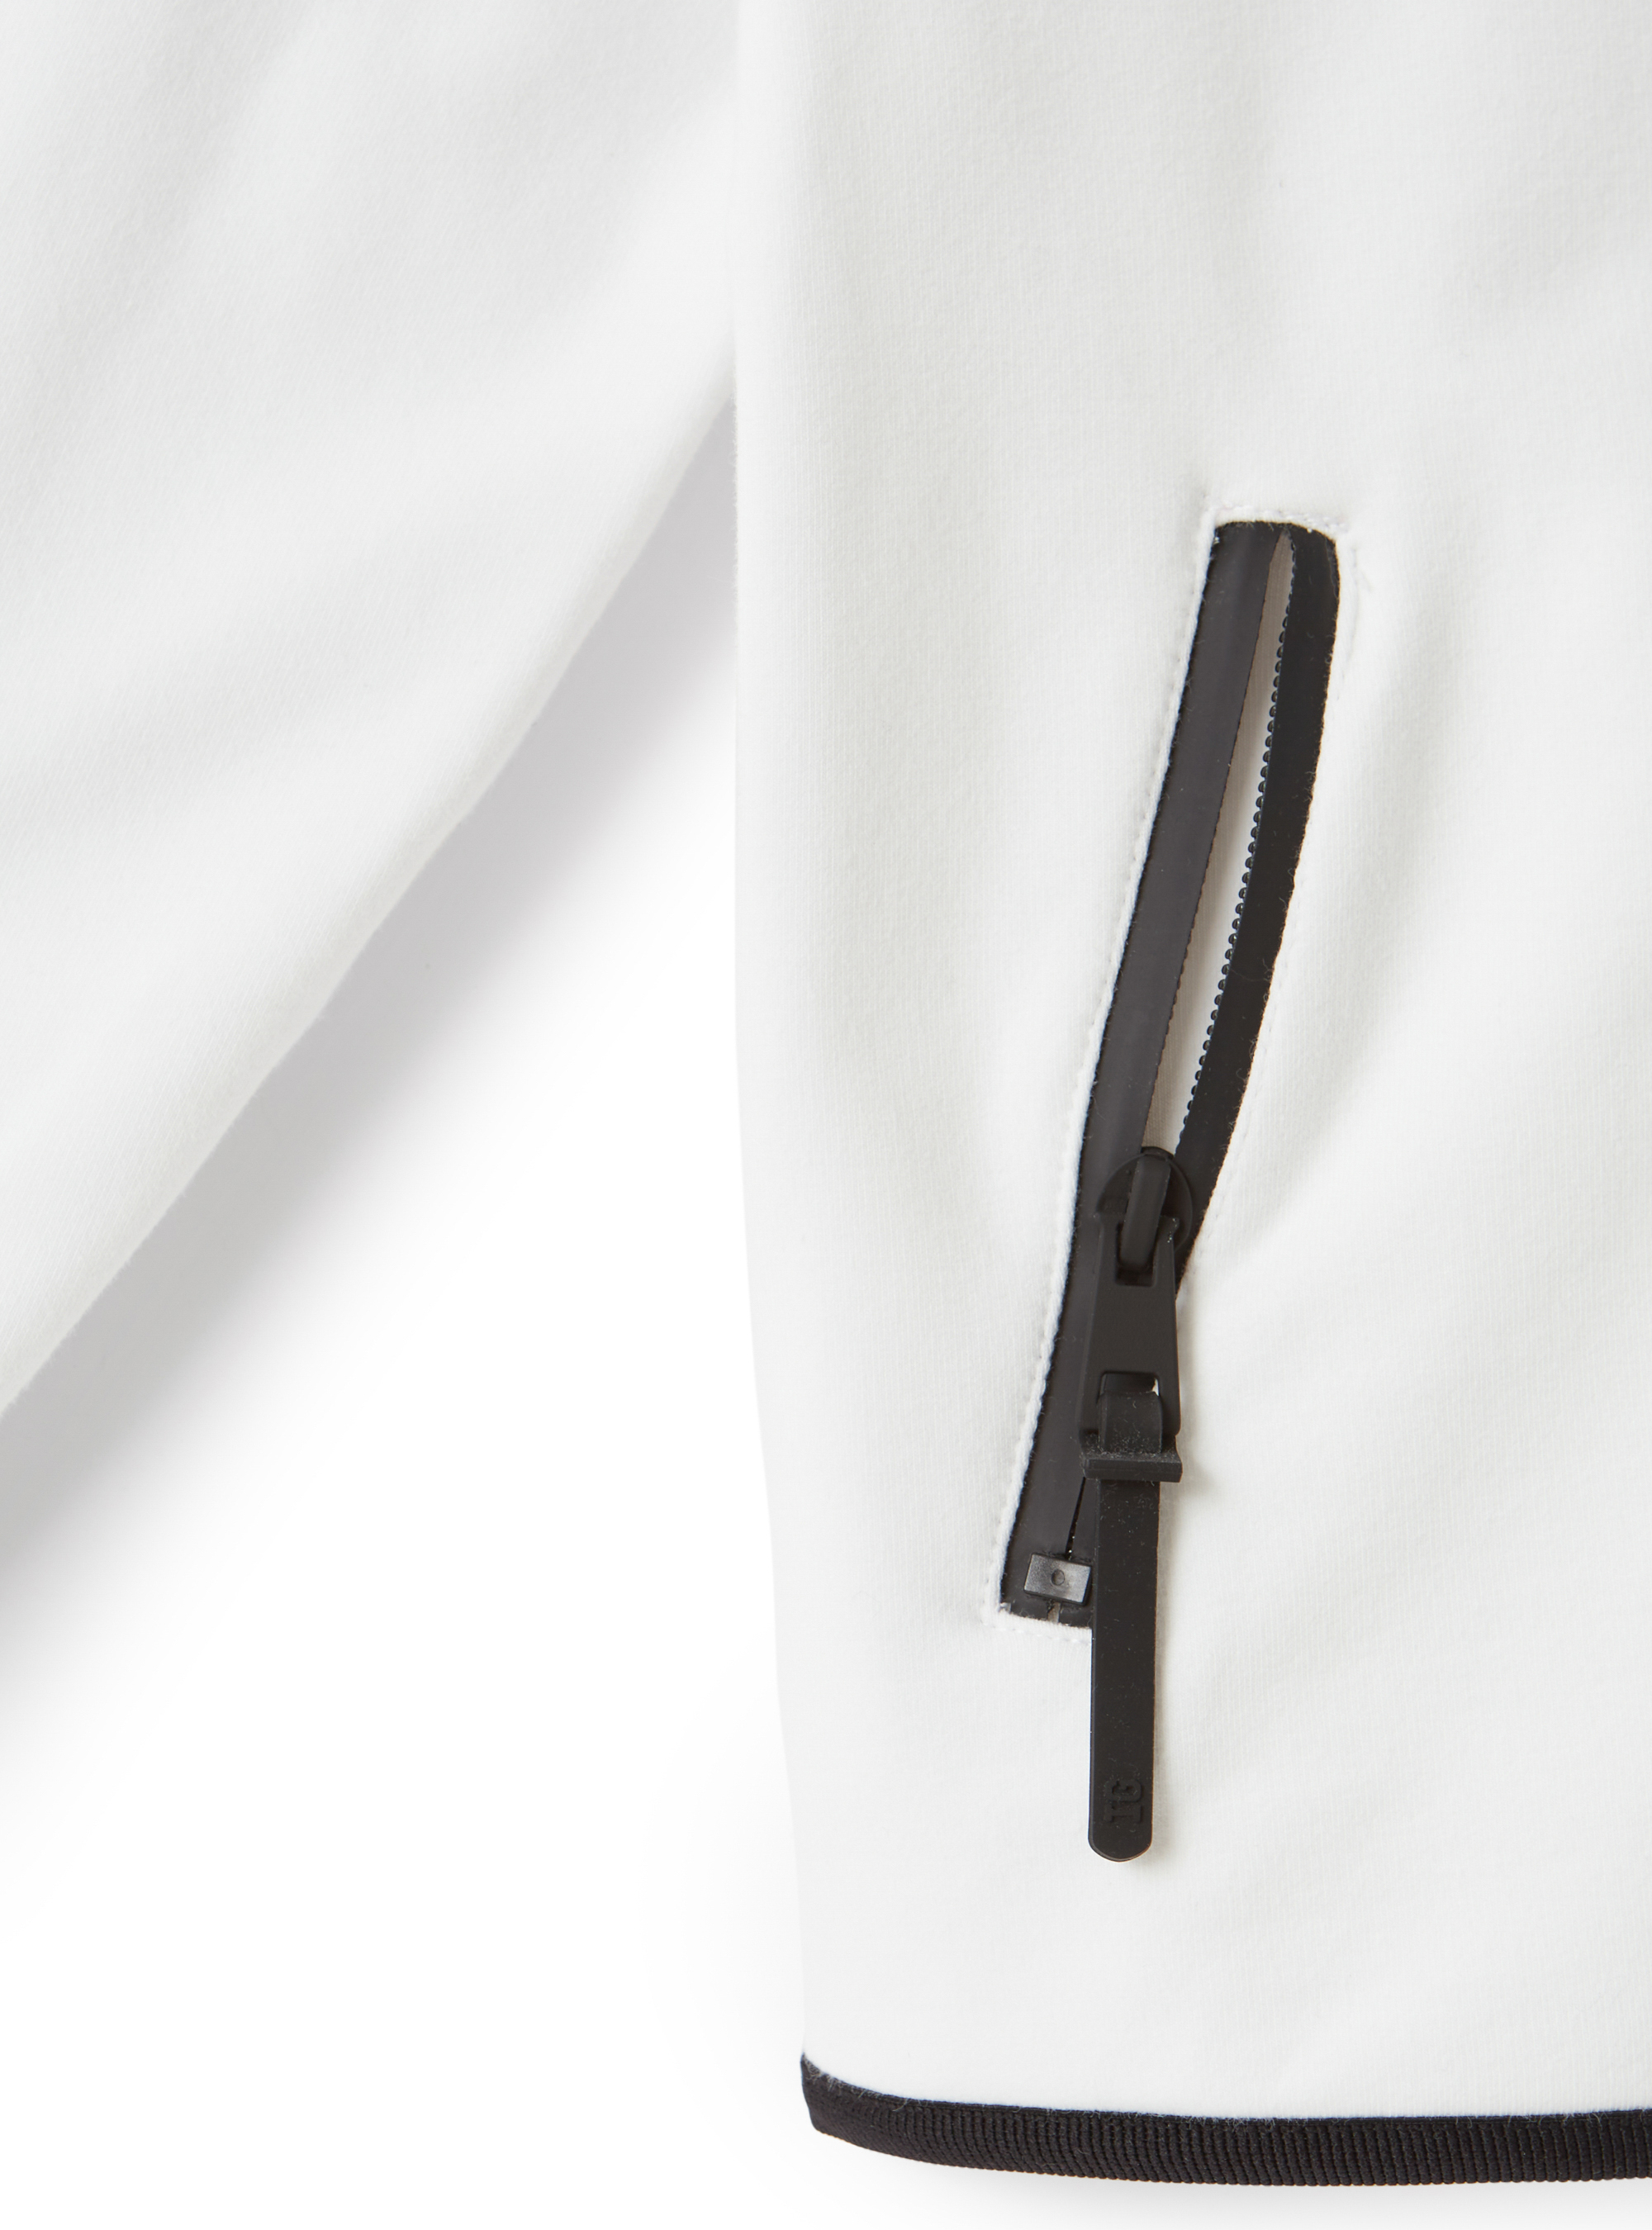 Weißes Sweatshirt mit schwarzen Bändern - Weiss | Il Gufo